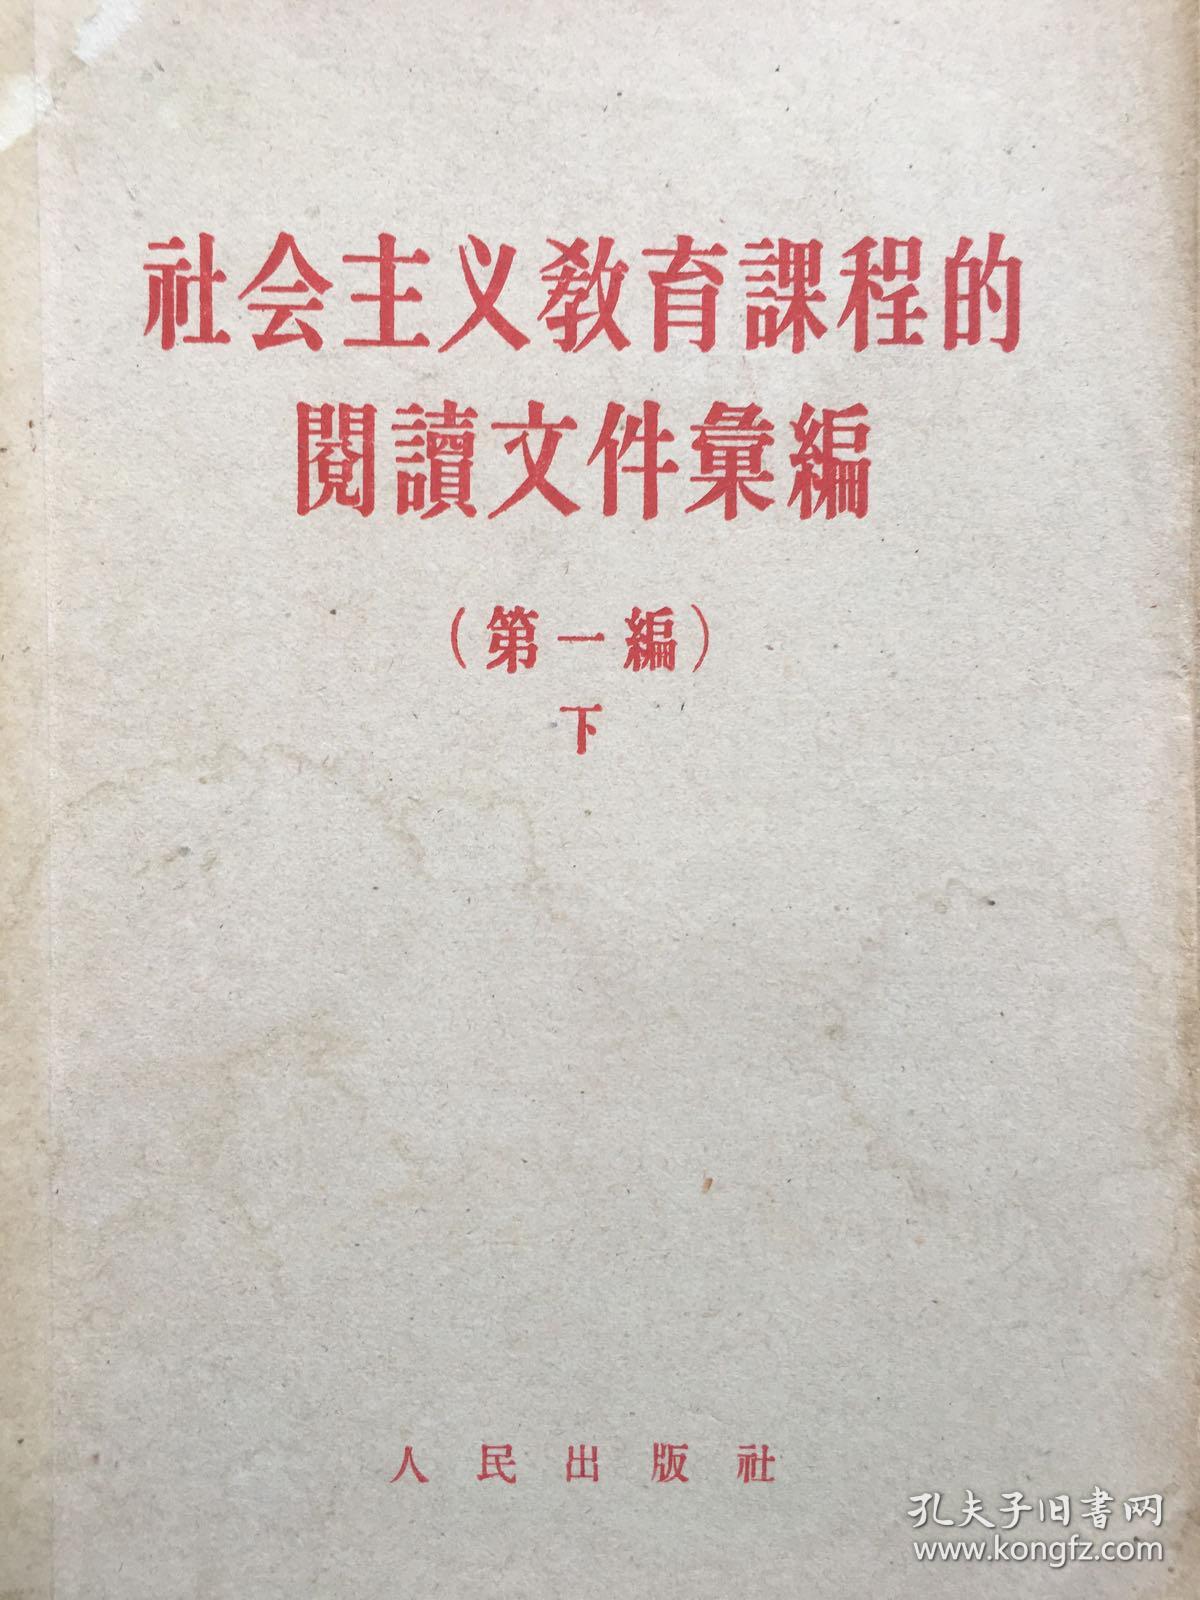 社会主义教育课程的阅读文件汇编，全二册，1957年版